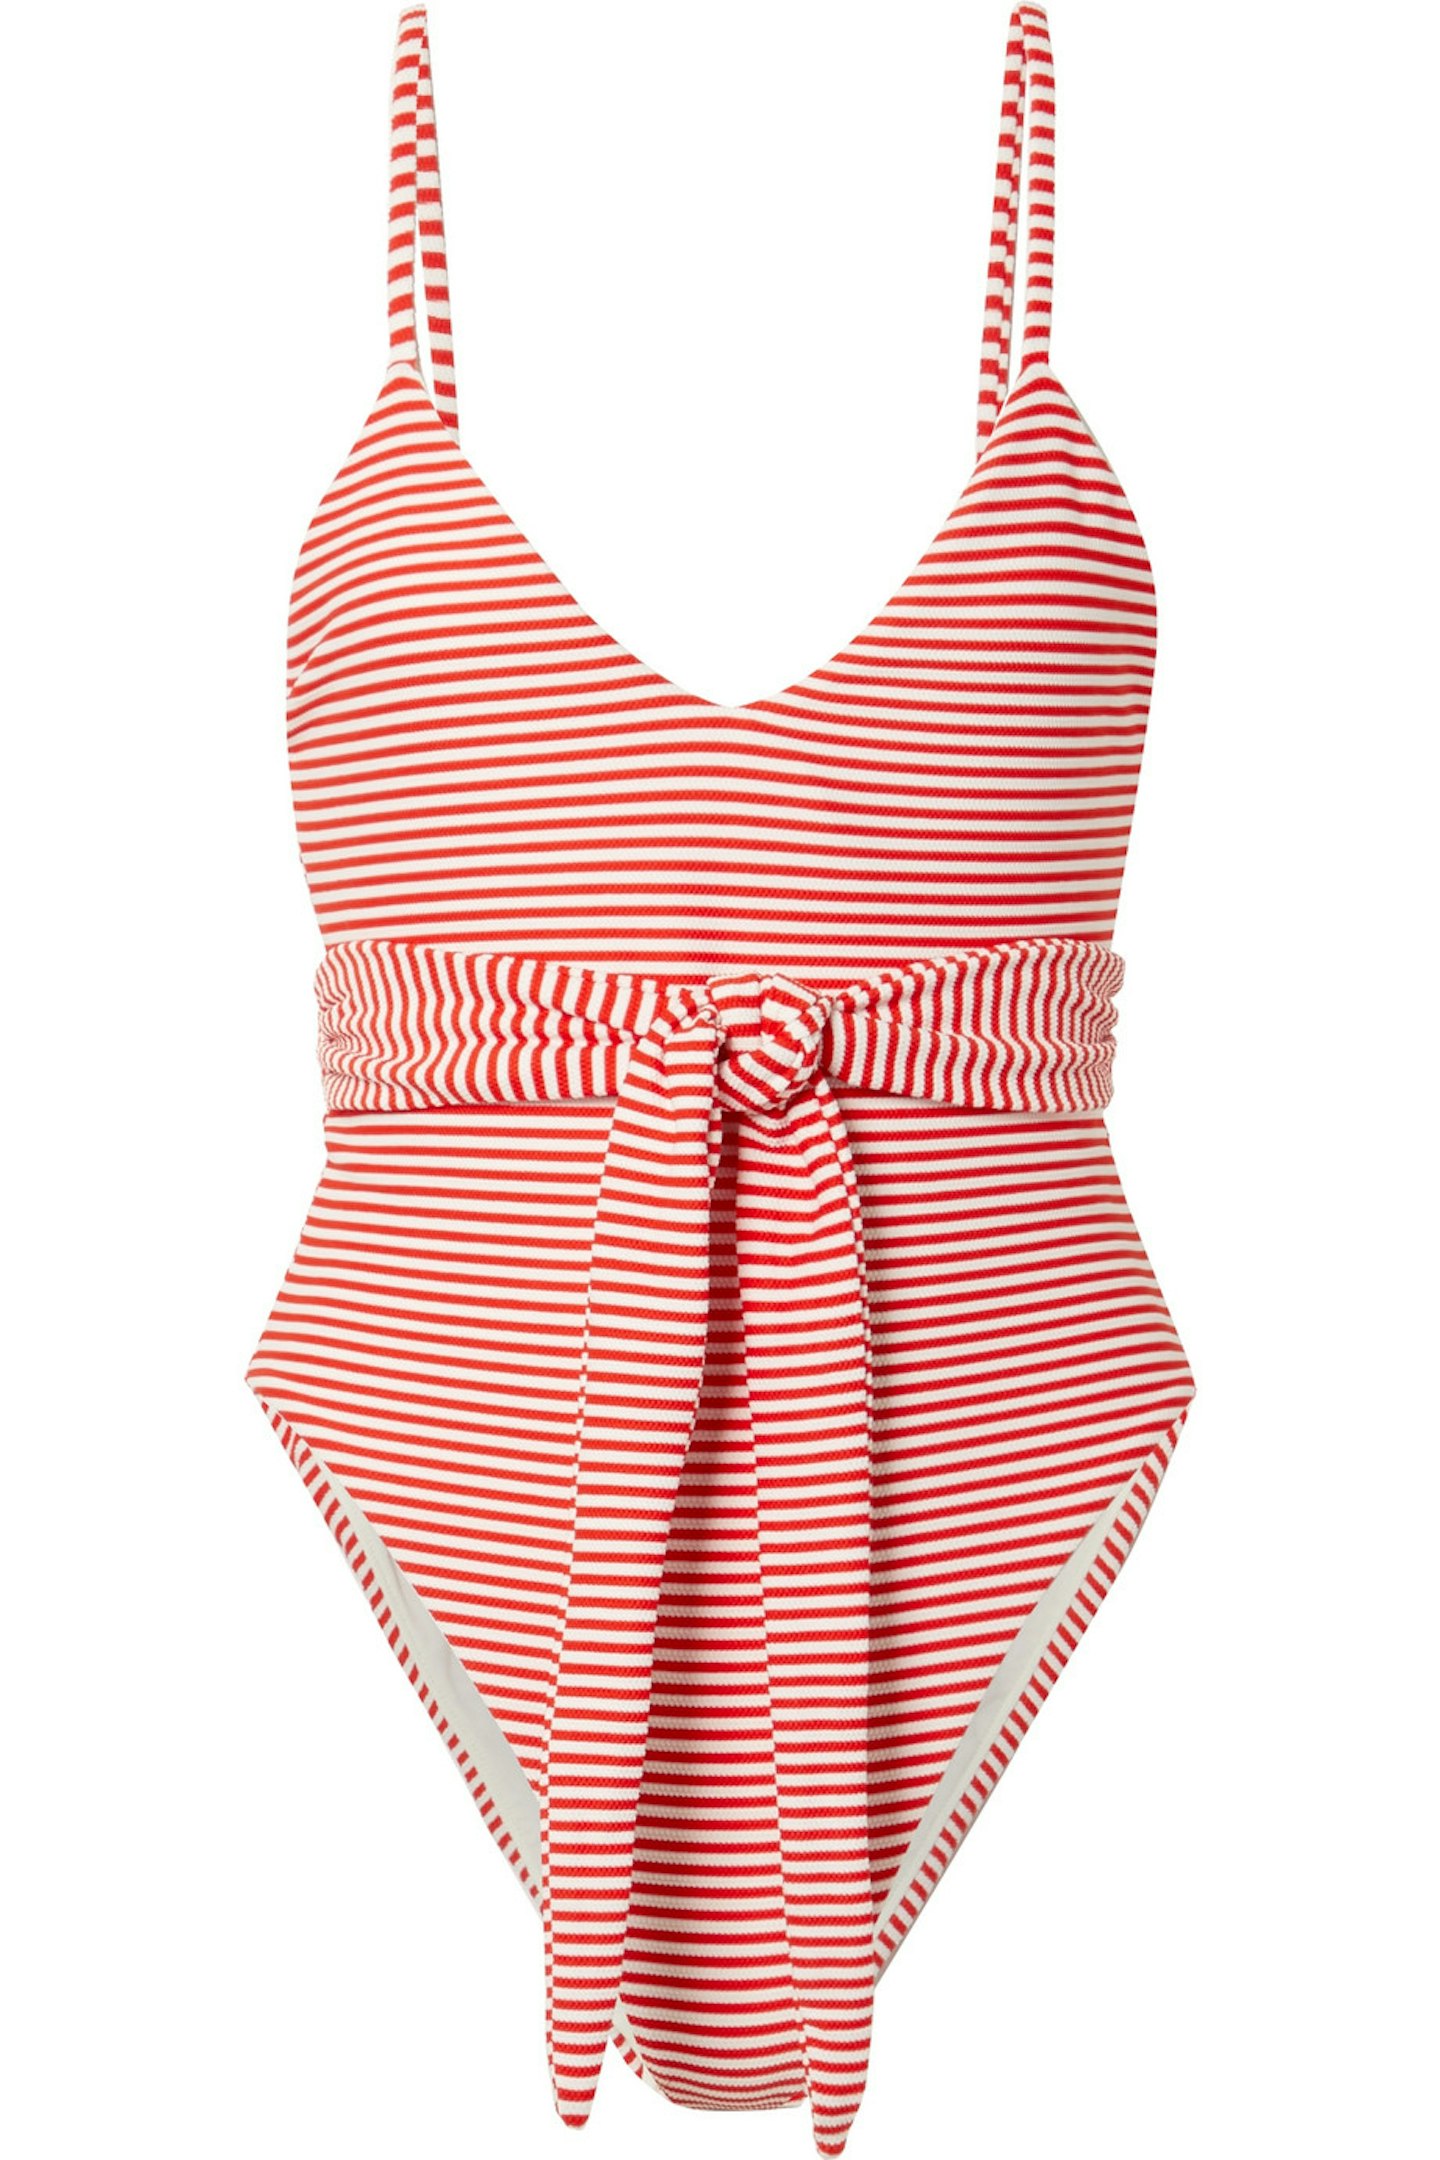 Mara Hoffman, Belted Stripe Swimsuit, £290